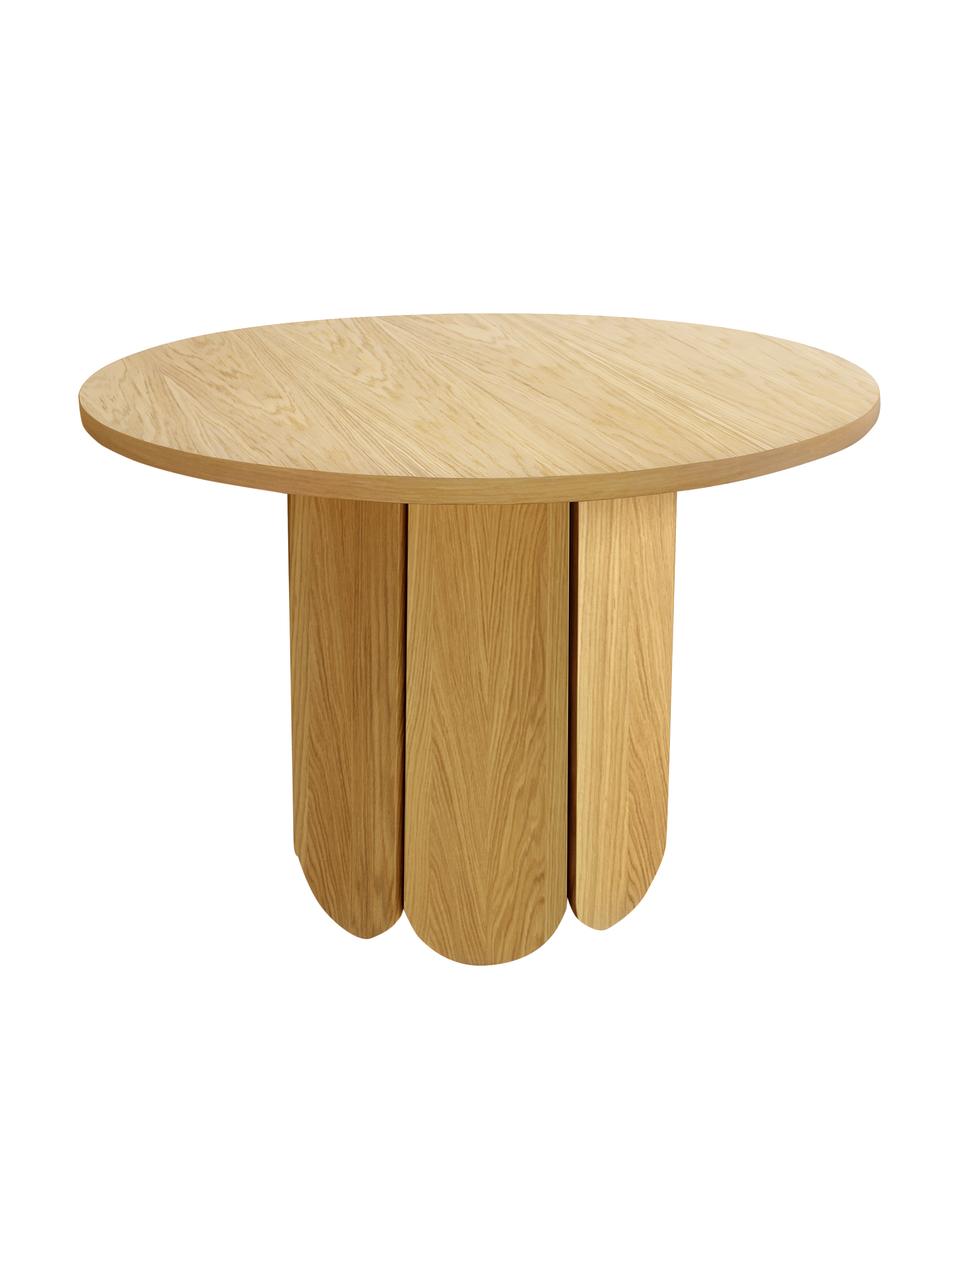 Okrągły stół do jadalni z fornirem z drewna dębowego Soft, Płyta pilśniowa średniej gęstości (MDF) z fornirem z drewna dębowego z certyfikatem FSC, Jasne drewno naturalne, Ø 98 x W 74 cm